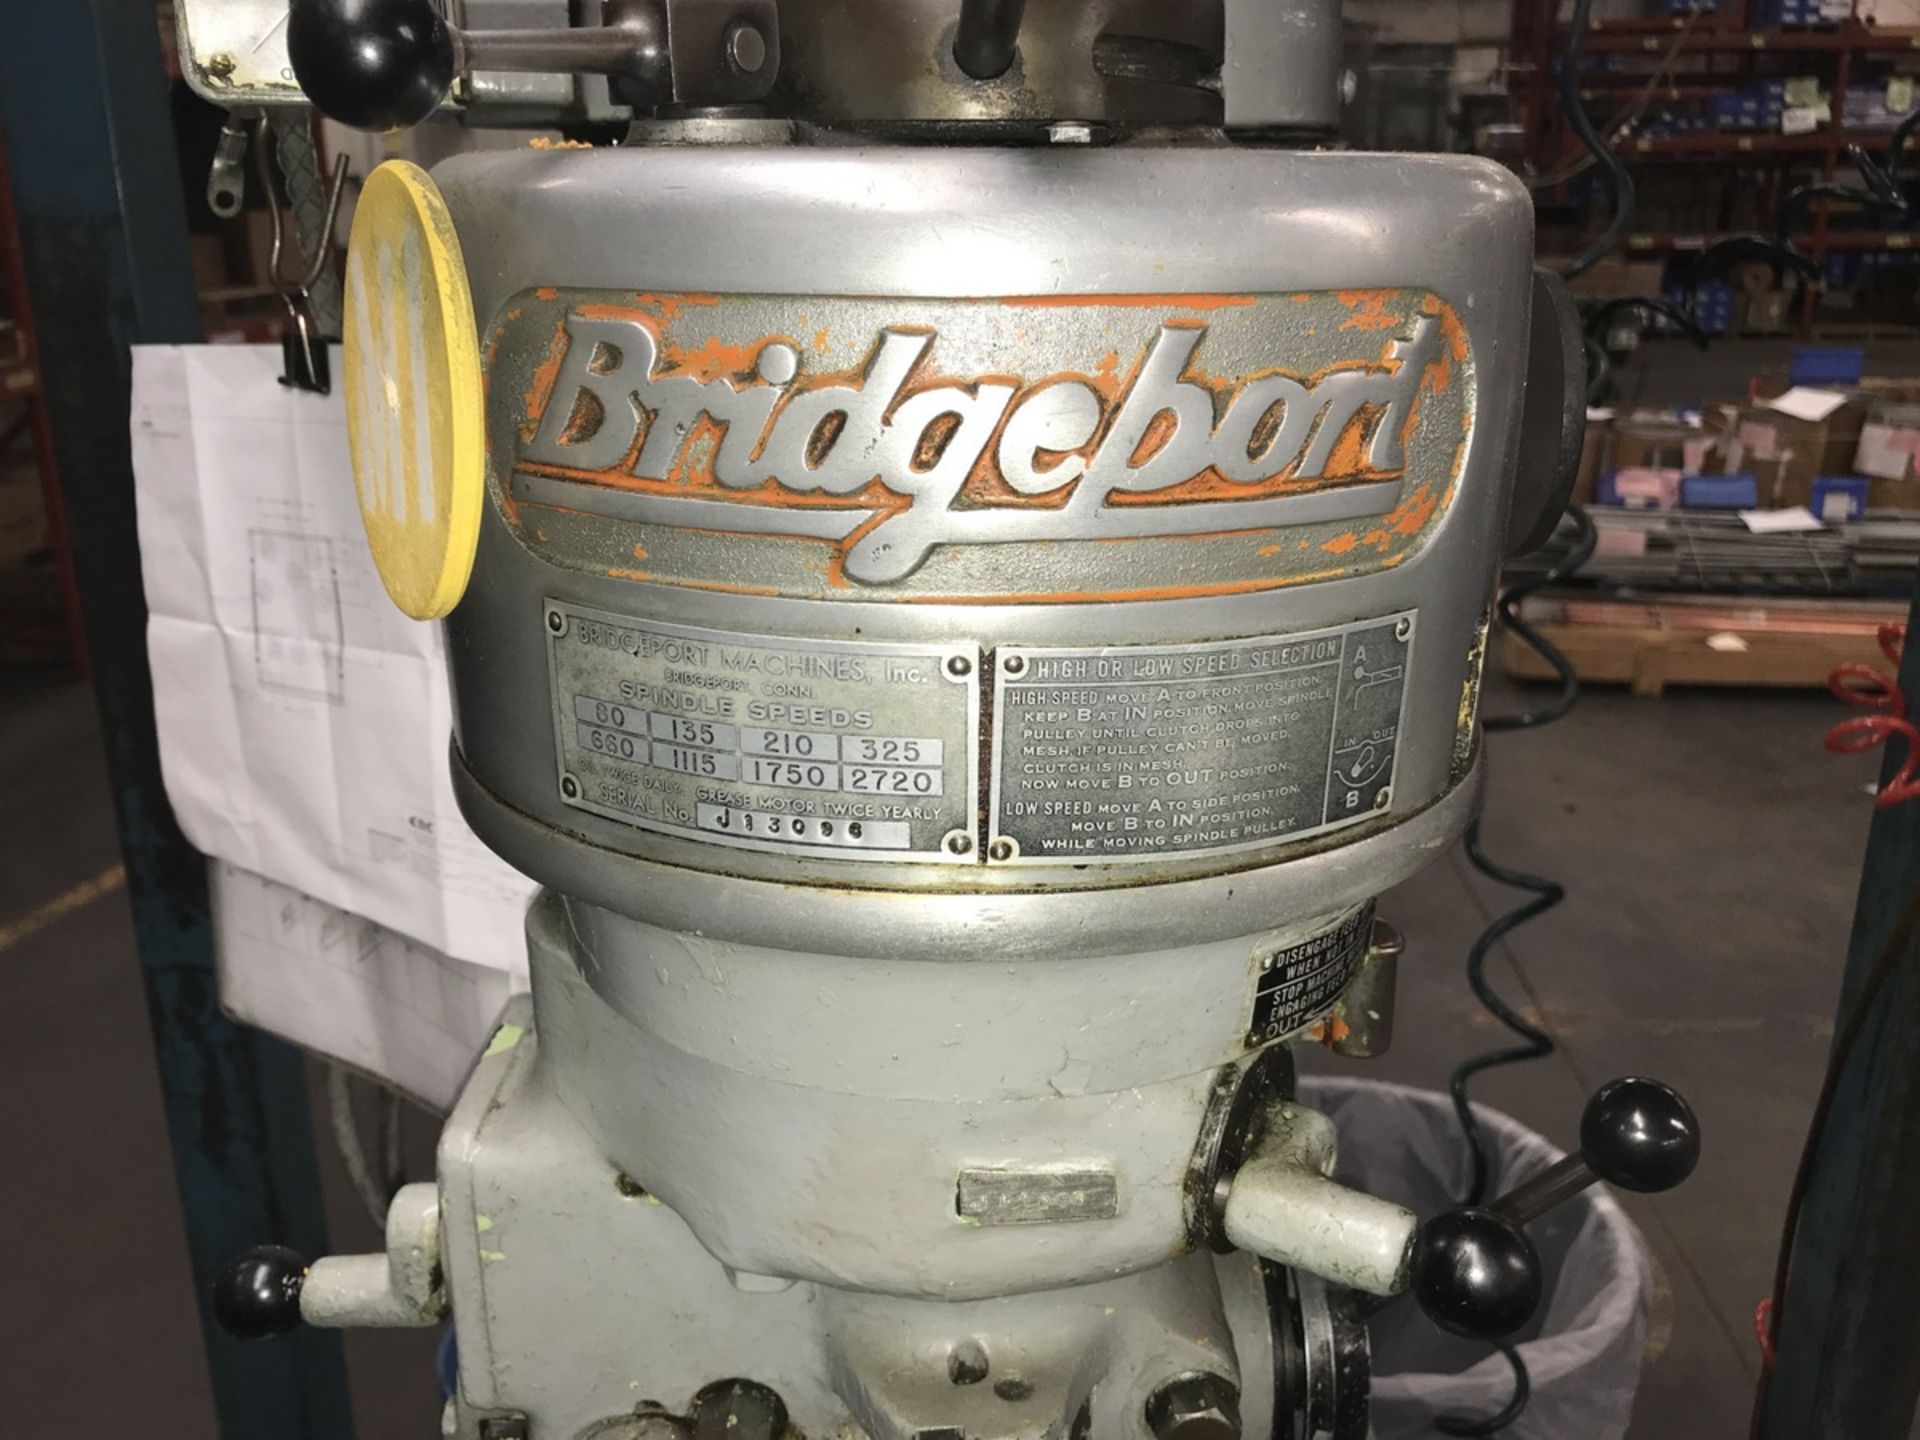 Bridgeport 1Hp Vertical Milling Machine - Image 10 of 11